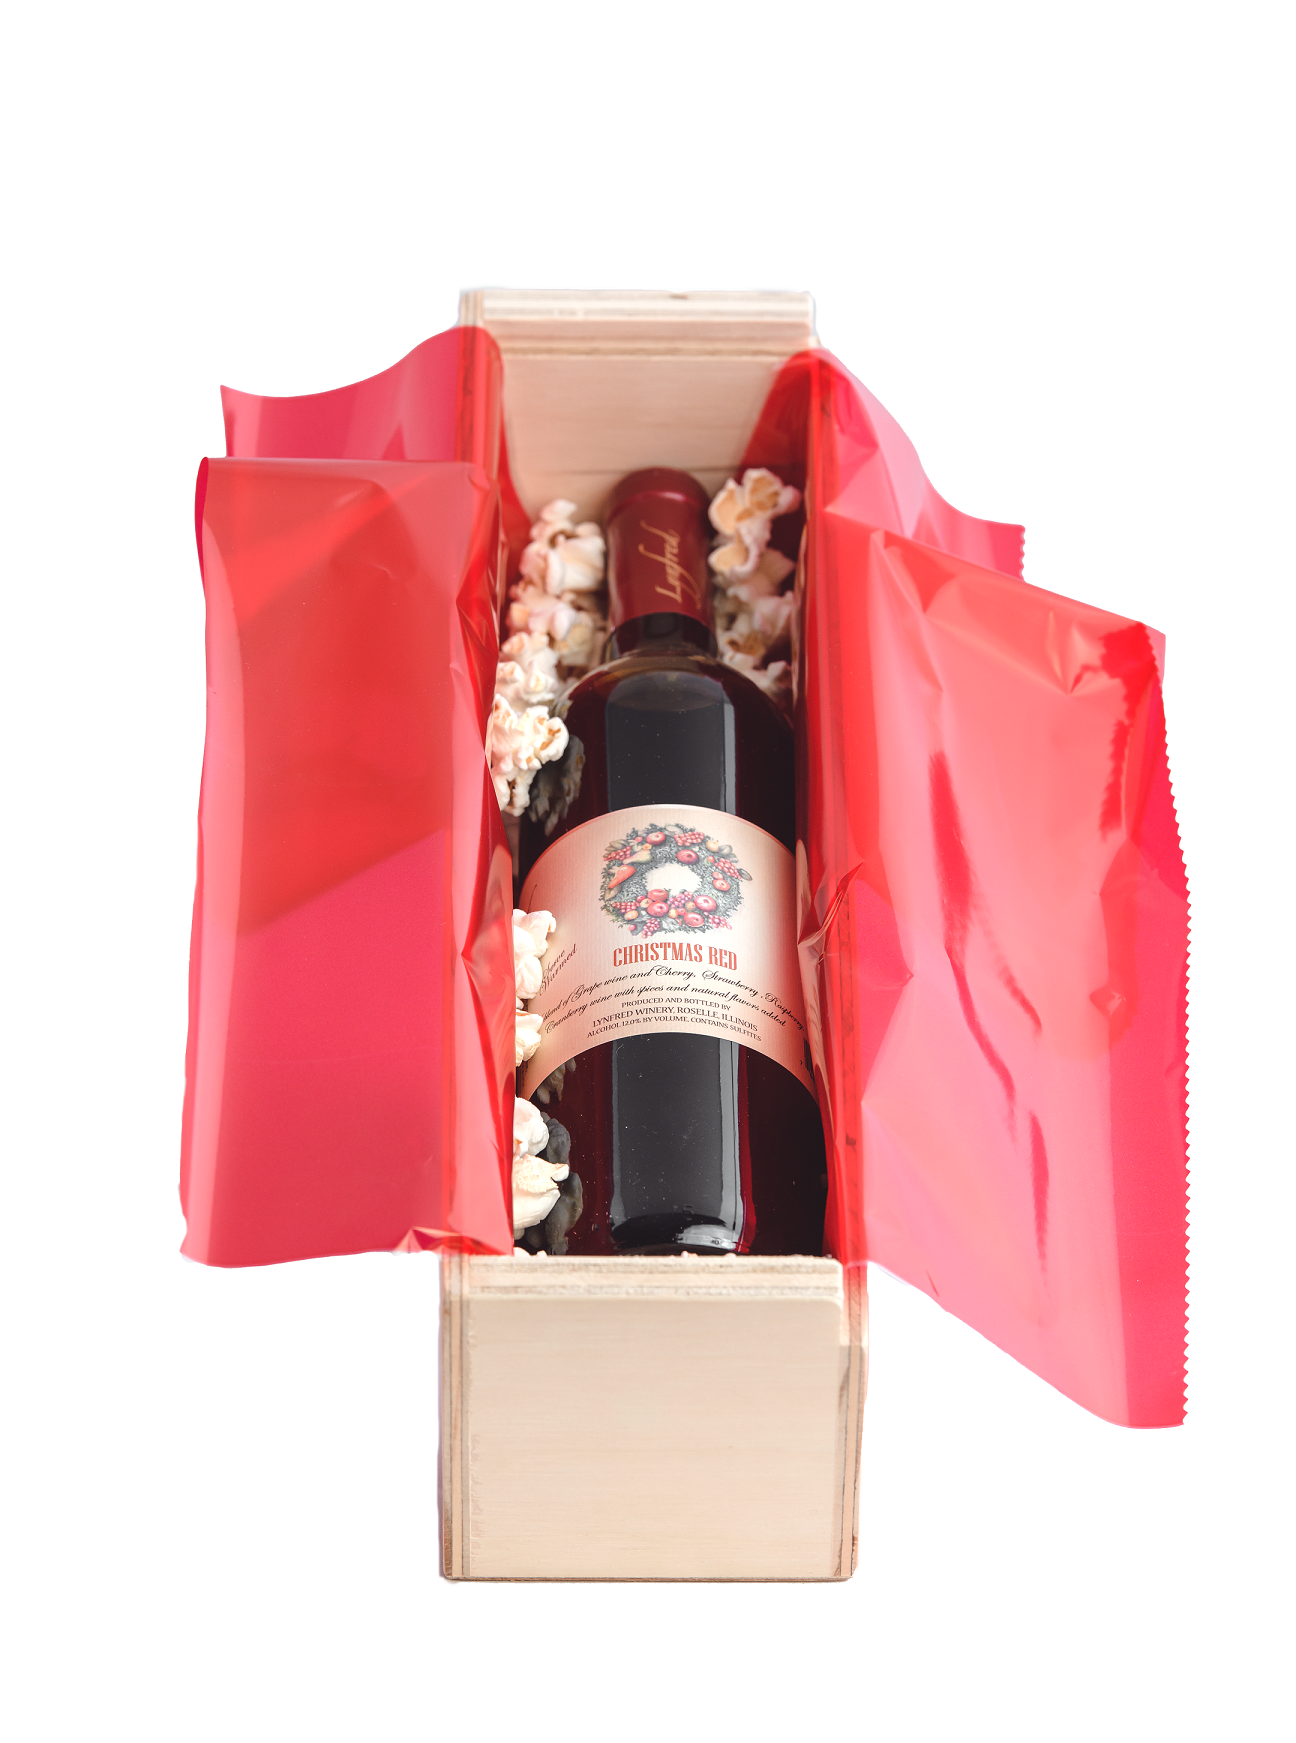 Marques De Toledo Spanish Wine Crate - Gourmet Hampers | United States